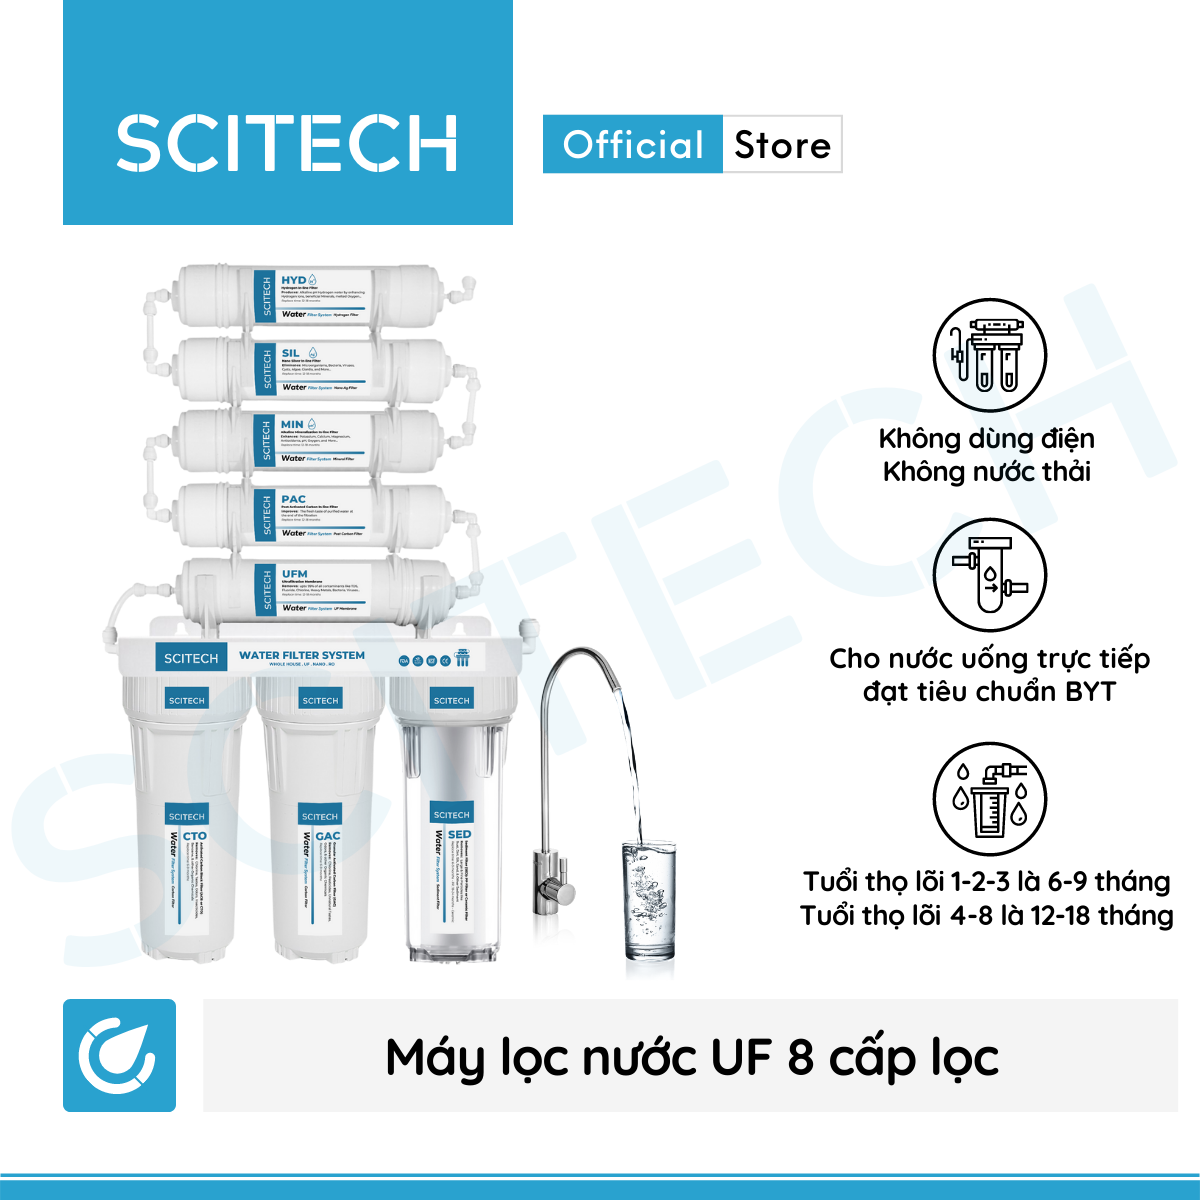 Máy lọc nước UF 8 cấp lọc by Scitech (Không dùng điện, không nước thải) - Hàng chính hãng